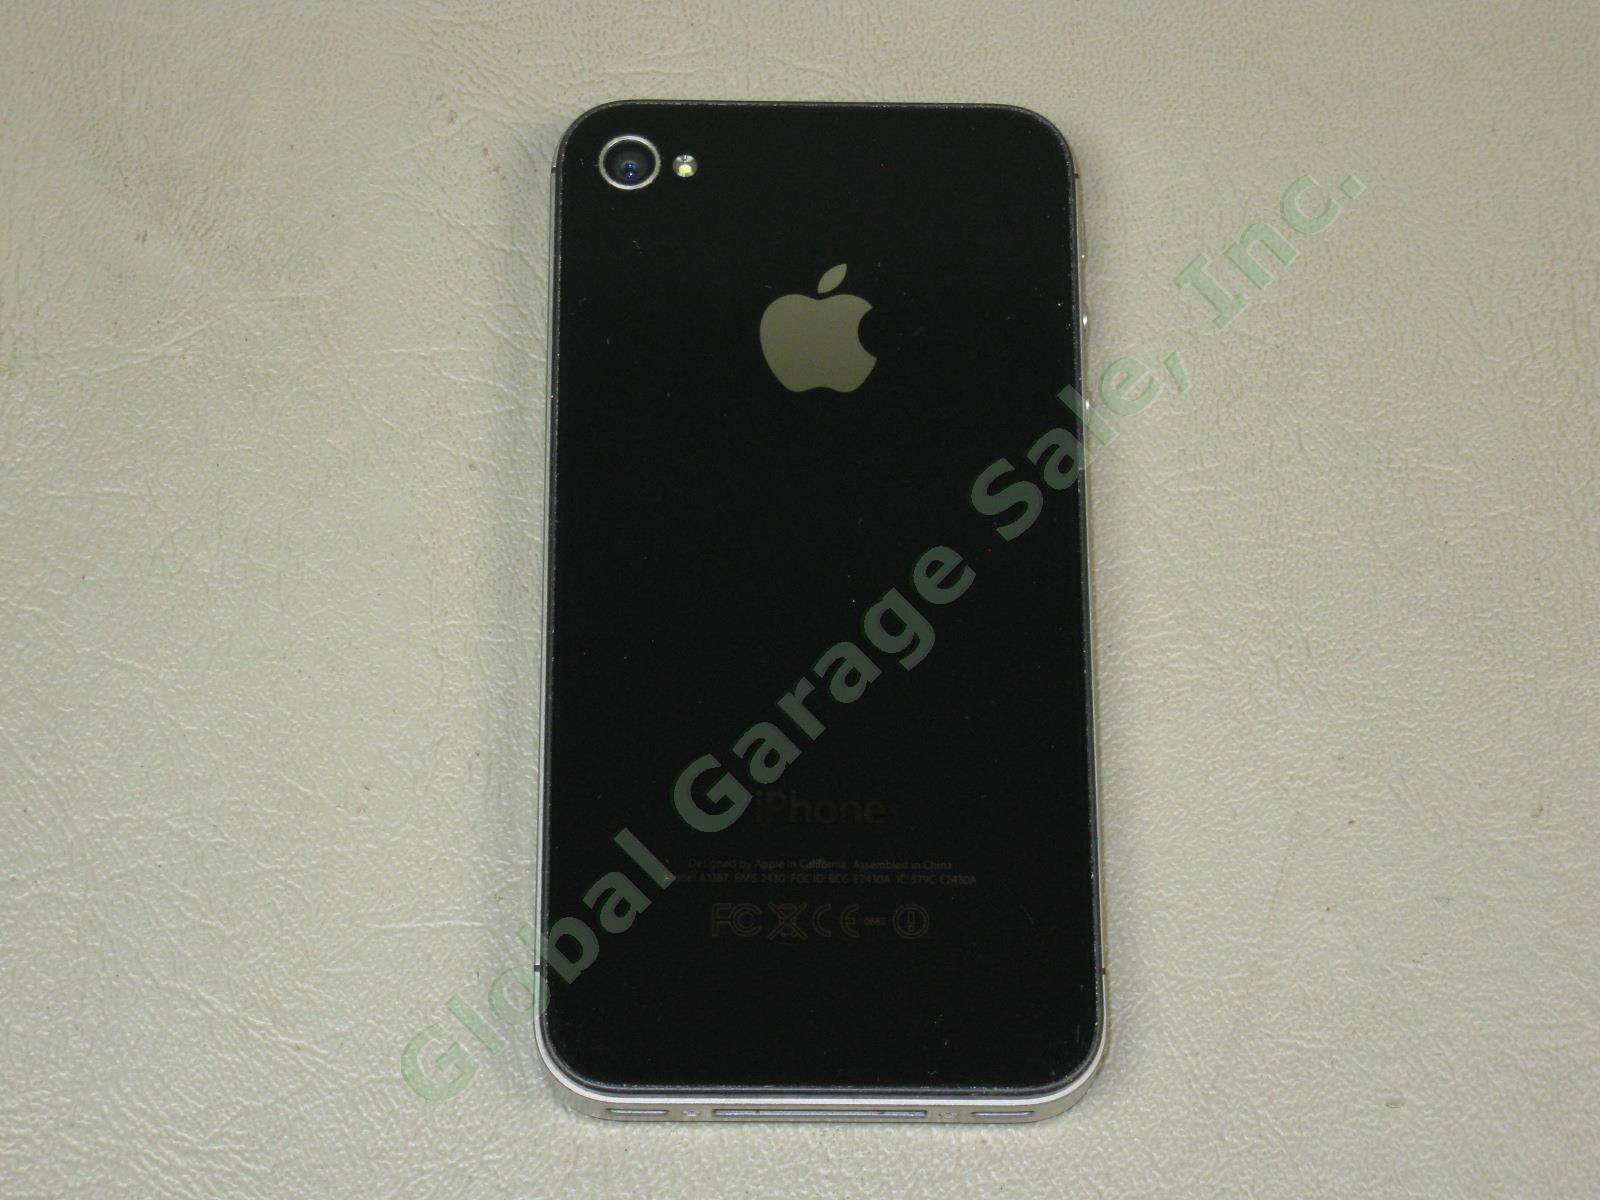 Apple iPhone 4s 16GB Black Model A1387 MD276LL/A Verizon Unlocked + Reset NO RES 6